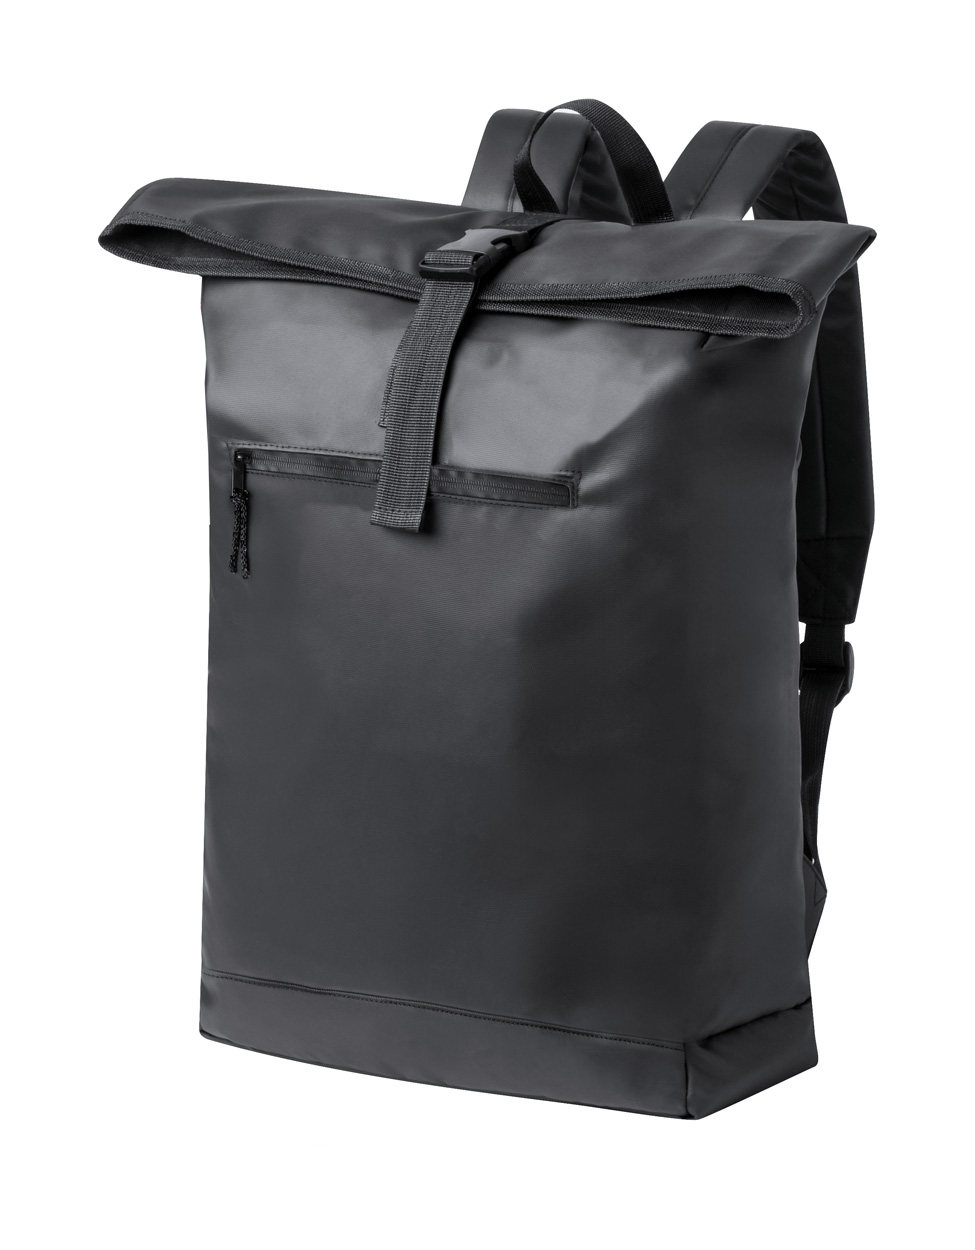 Lucenik backpack Black